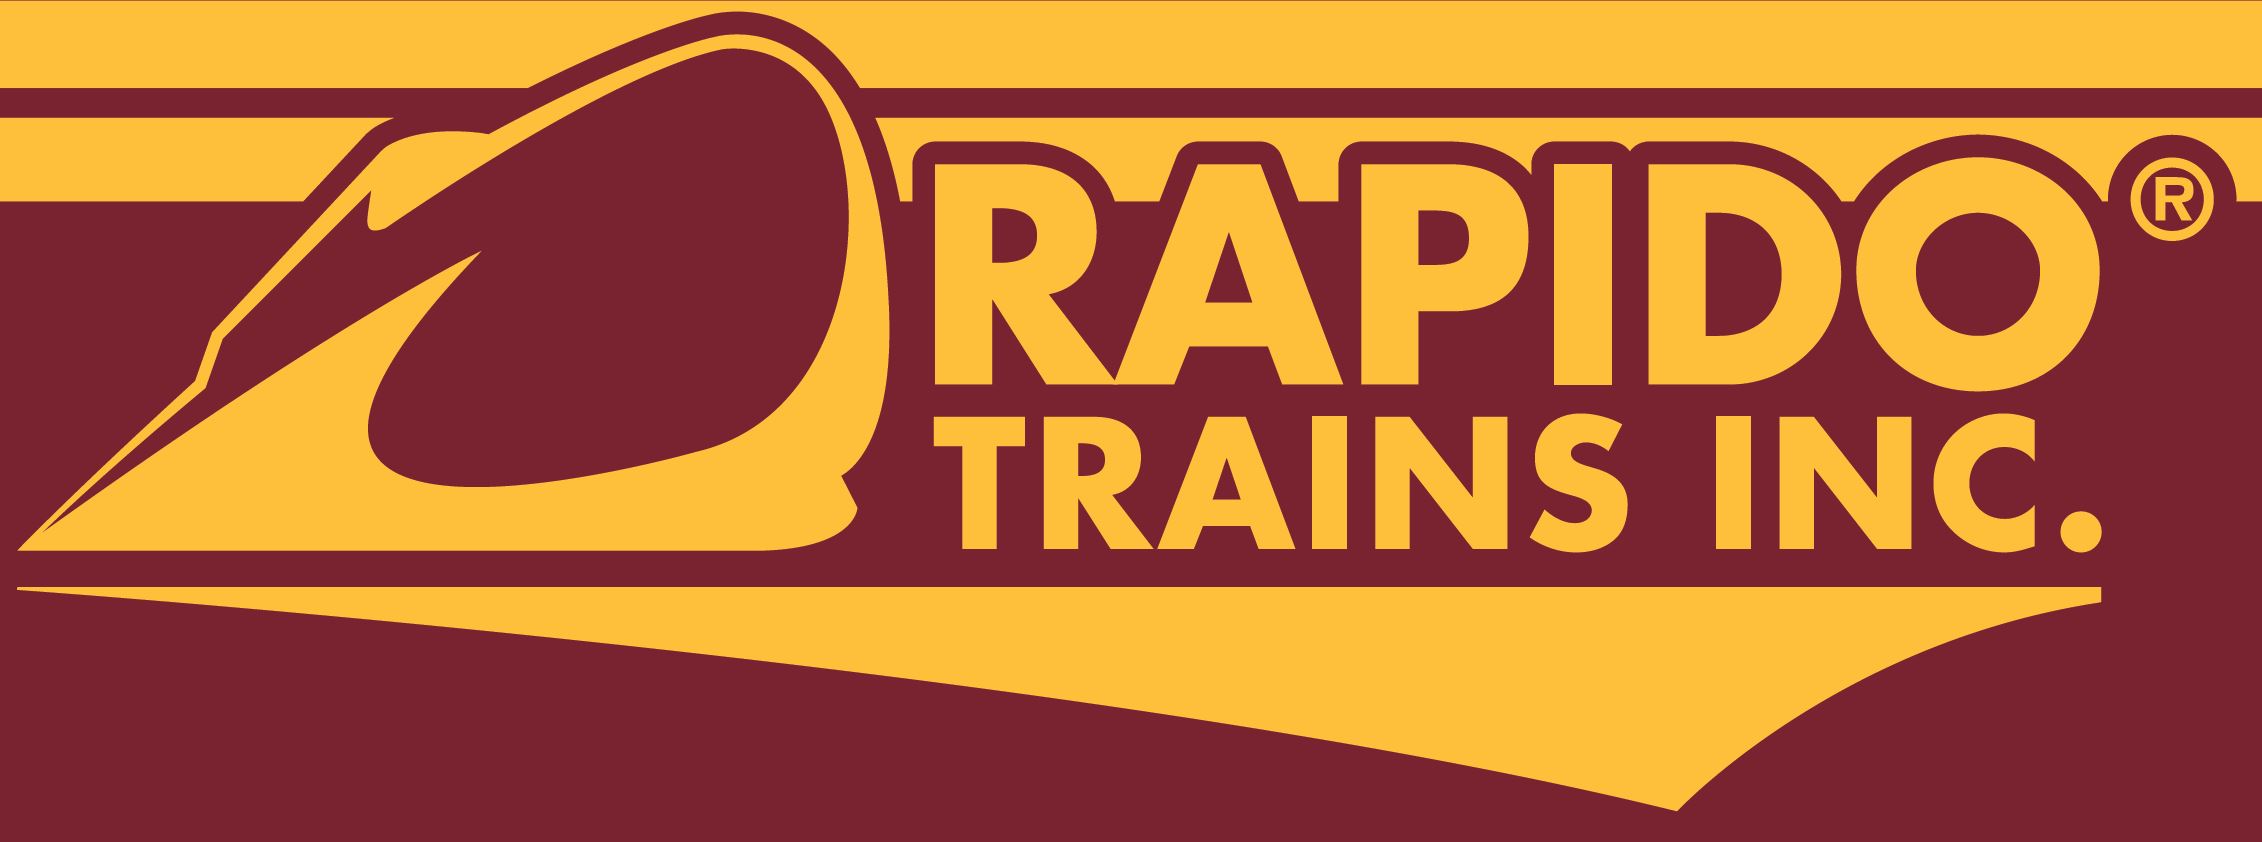 Rapido Trains Inc Logo 7